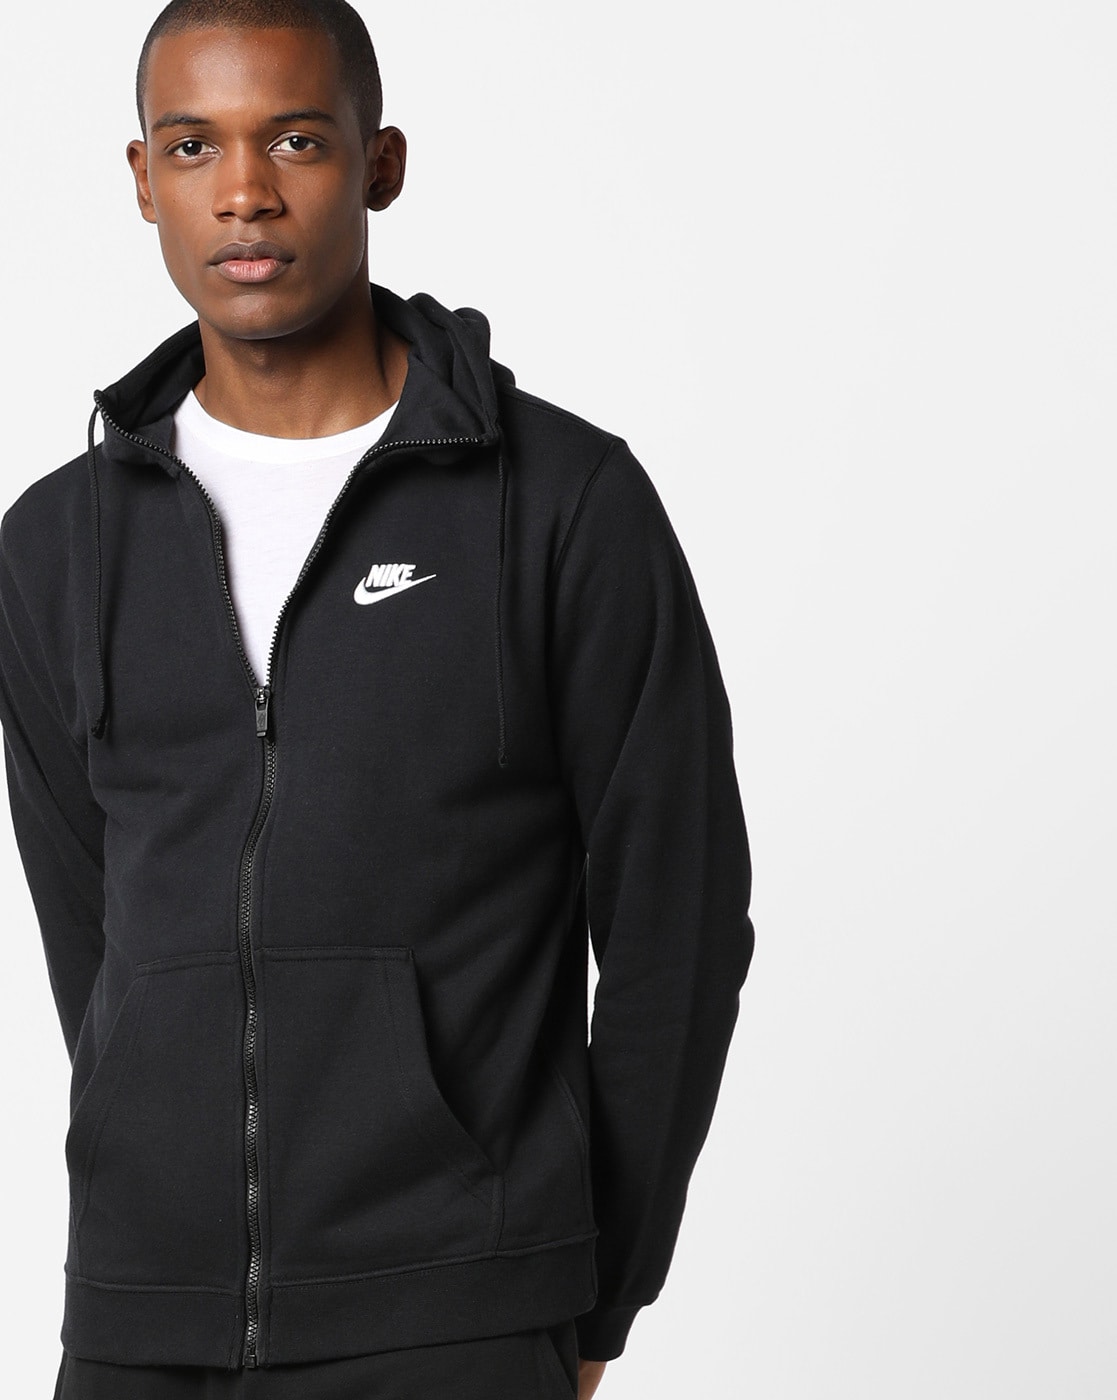 Buy Black Sweatshirt Hoodies for Men by NIKE Online | Ajio.com